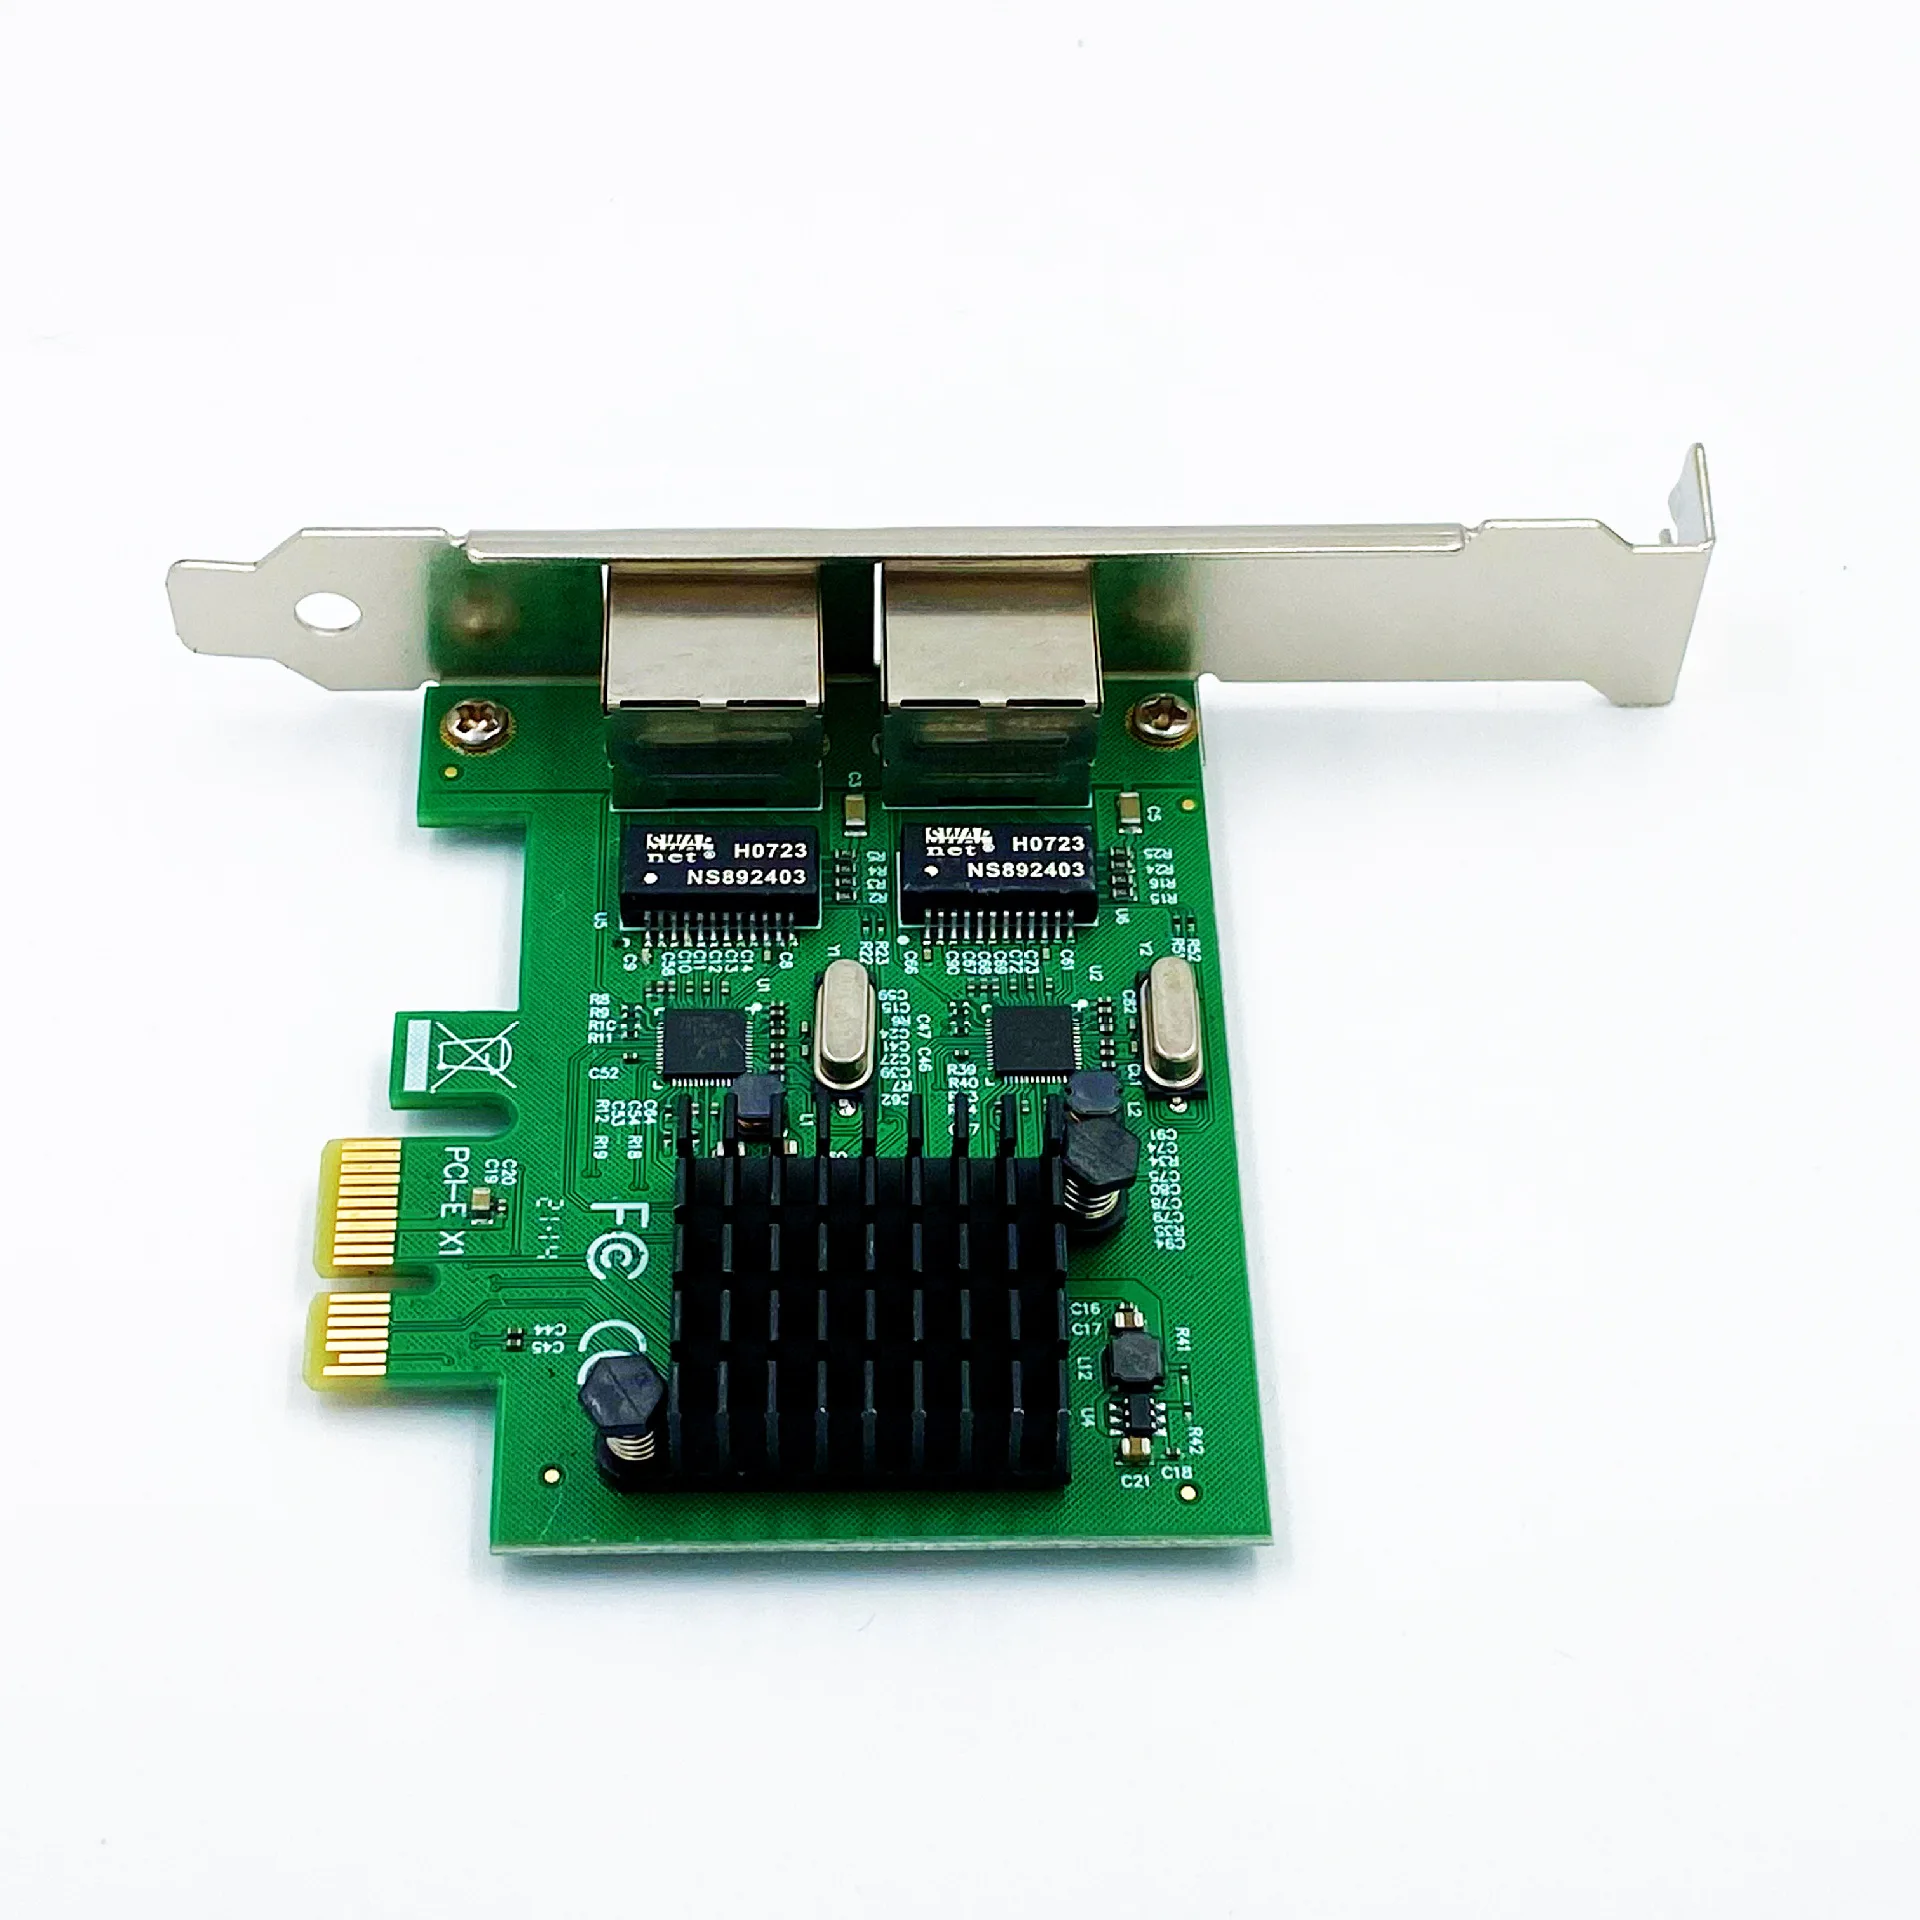 RTL8111 PCIe Dual-port Gigabit NIC PCI-E X1 Interfață Gigabit Server NIC Agregare Soft de Rutare